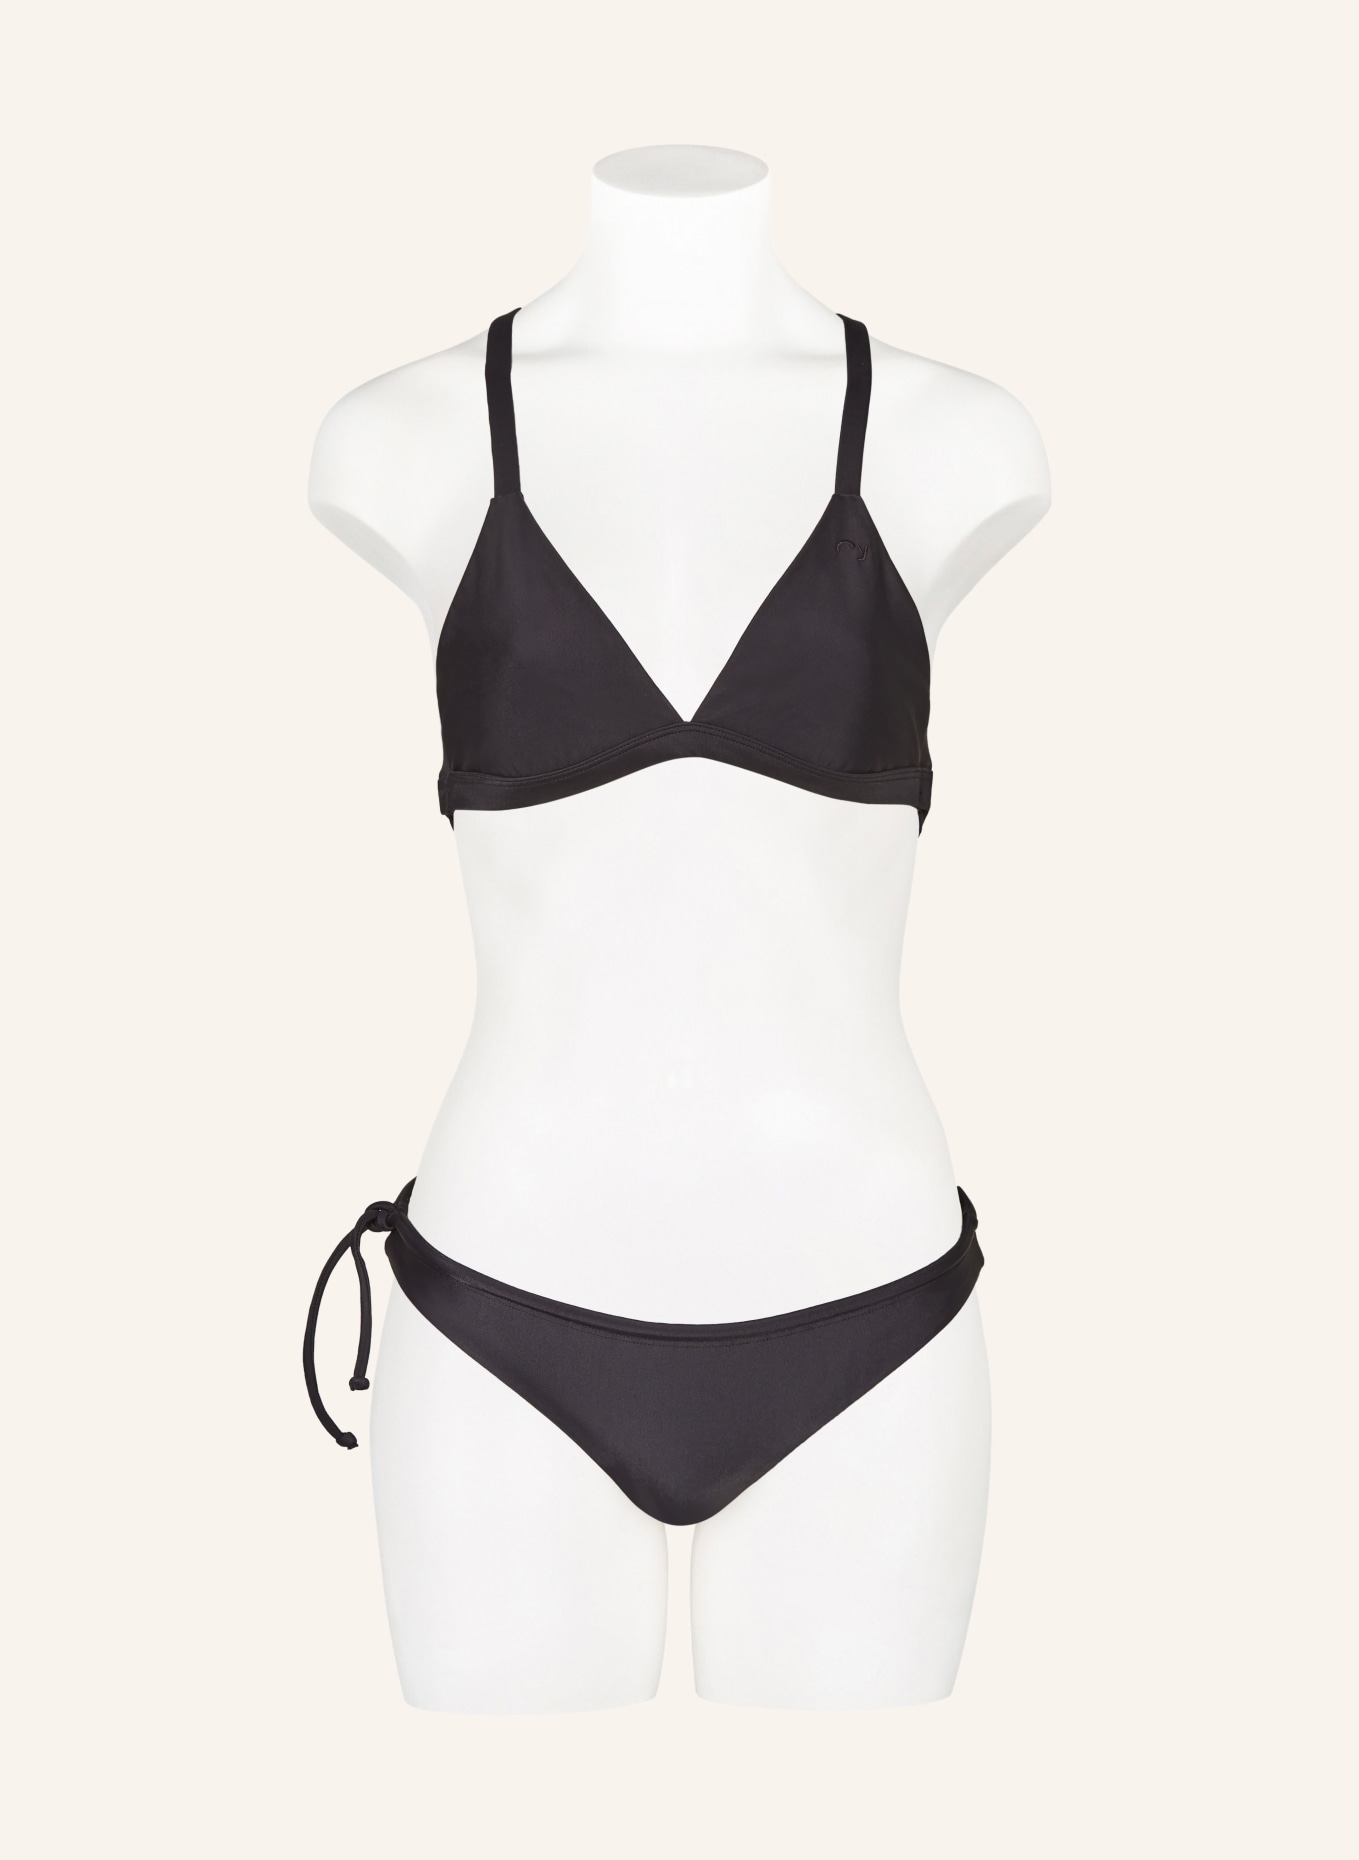 Oy Surf Basic bikini bottoms MAKO with UV protection, Color: BLACK (Image 2)